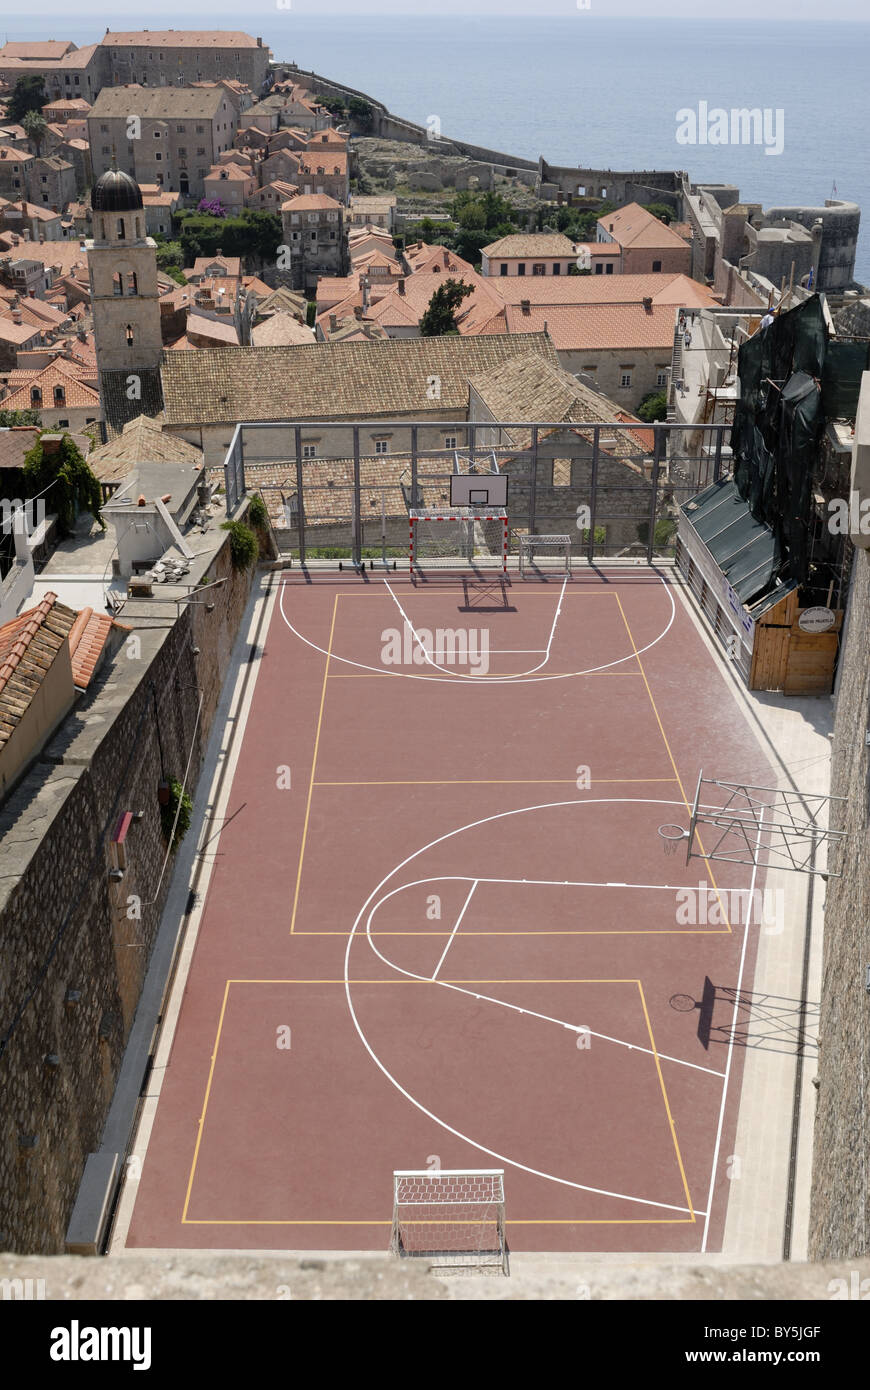 Kroaten lieben Sport. Dieses Gericht Basketball und Handball ist in der Altstadt von Dubrovnik. Von der Stadtmauer zu sehen. Dubrovnik... Stockfoto